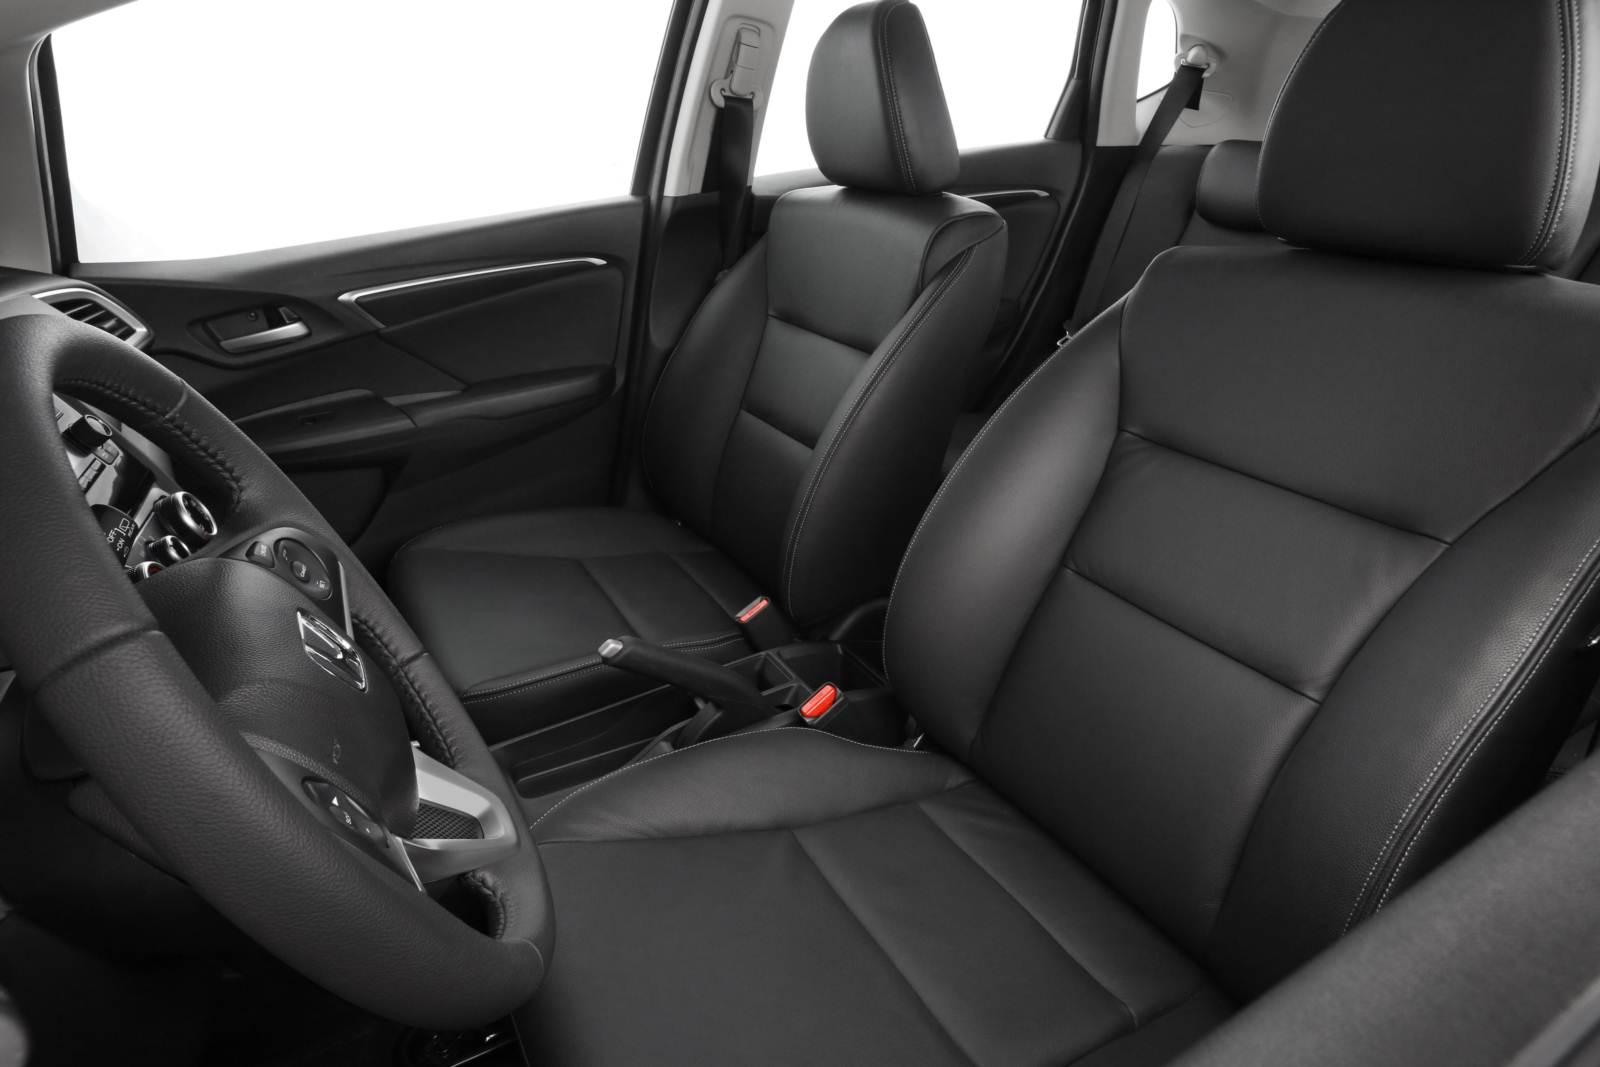 Honda Fit 2015 Interior: excelente acabamento